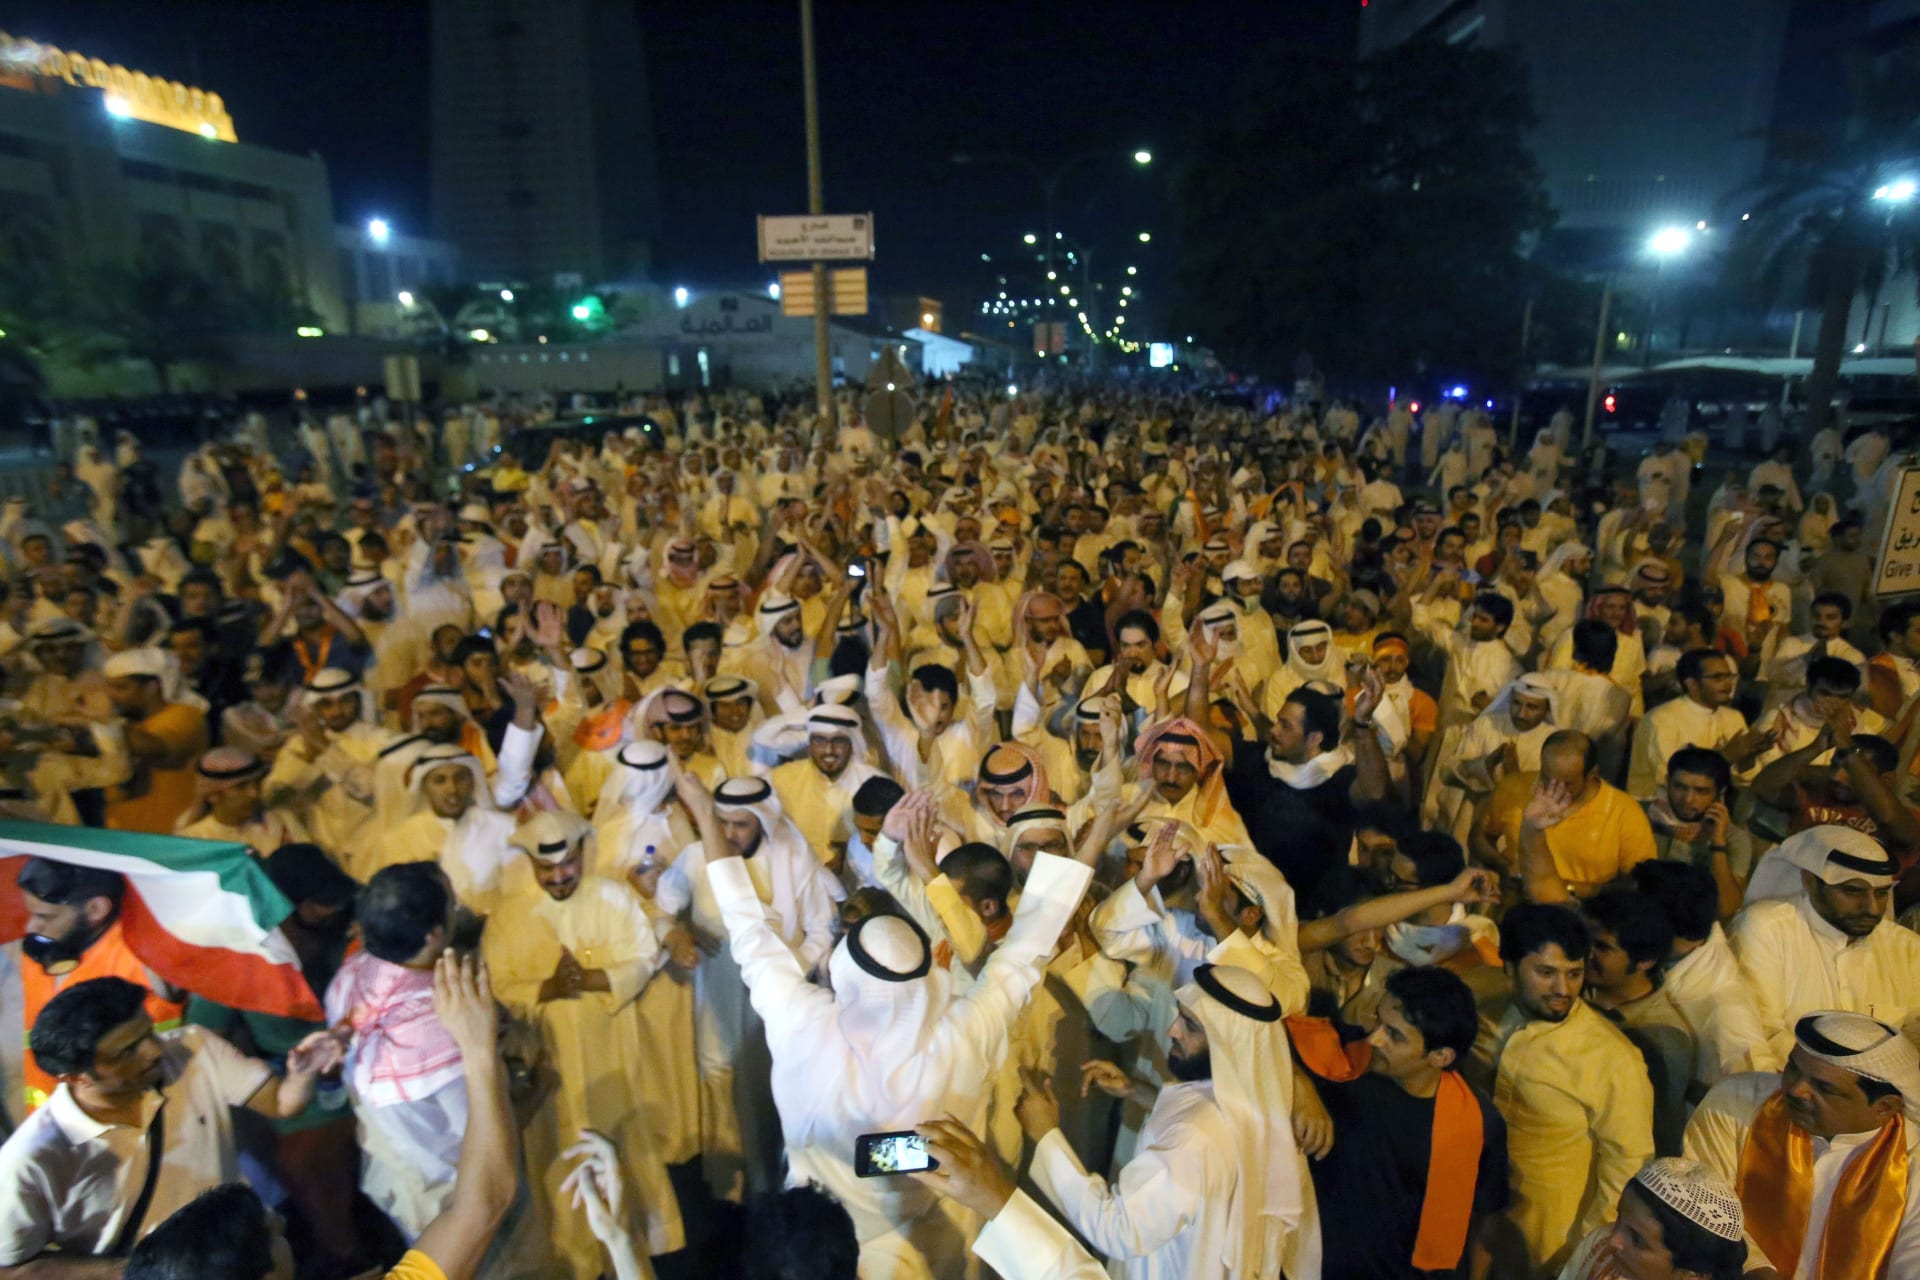 الكويت: سحب جنسية نائب سابق ومالك لقناة تلفزيونية وإغلاق جمعيات.. وإسلاميون يحذرون من التصعيد